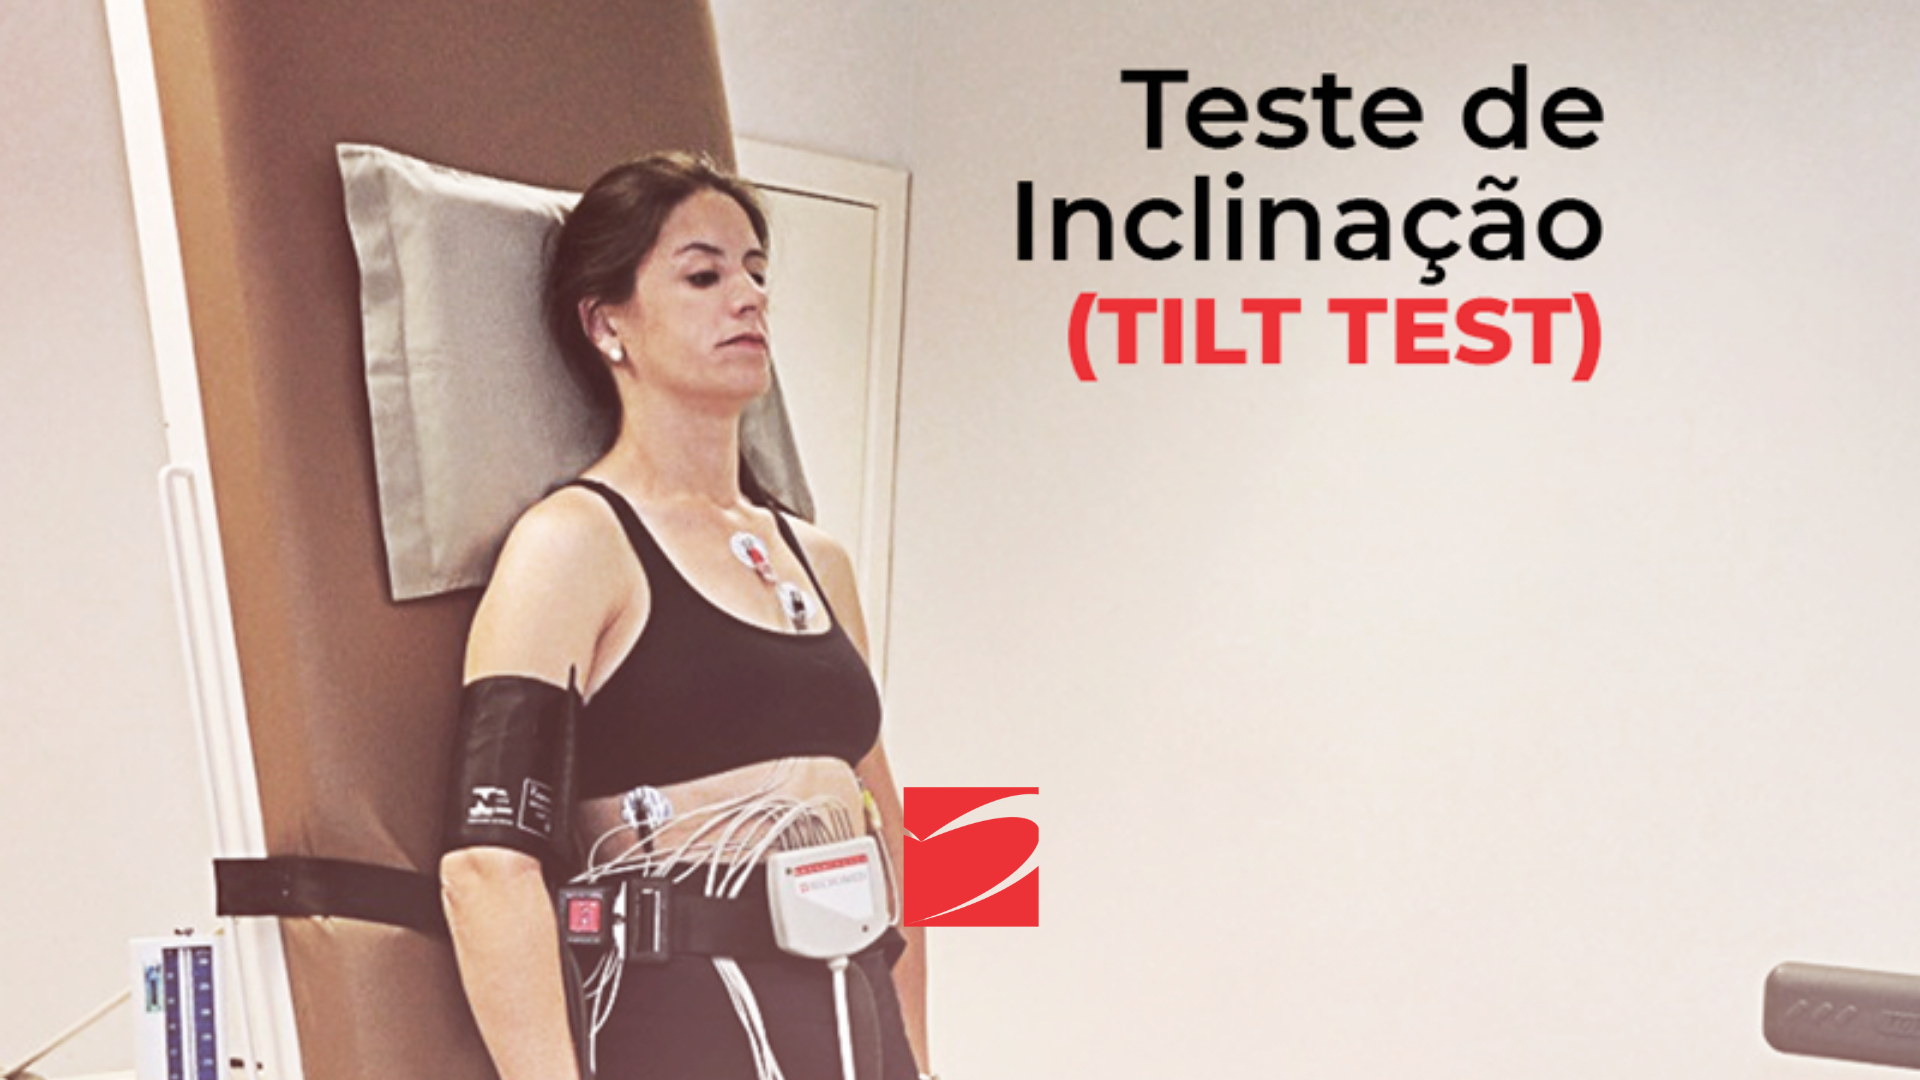 Teste de Tilt: Local, Material e Preparação do Doente